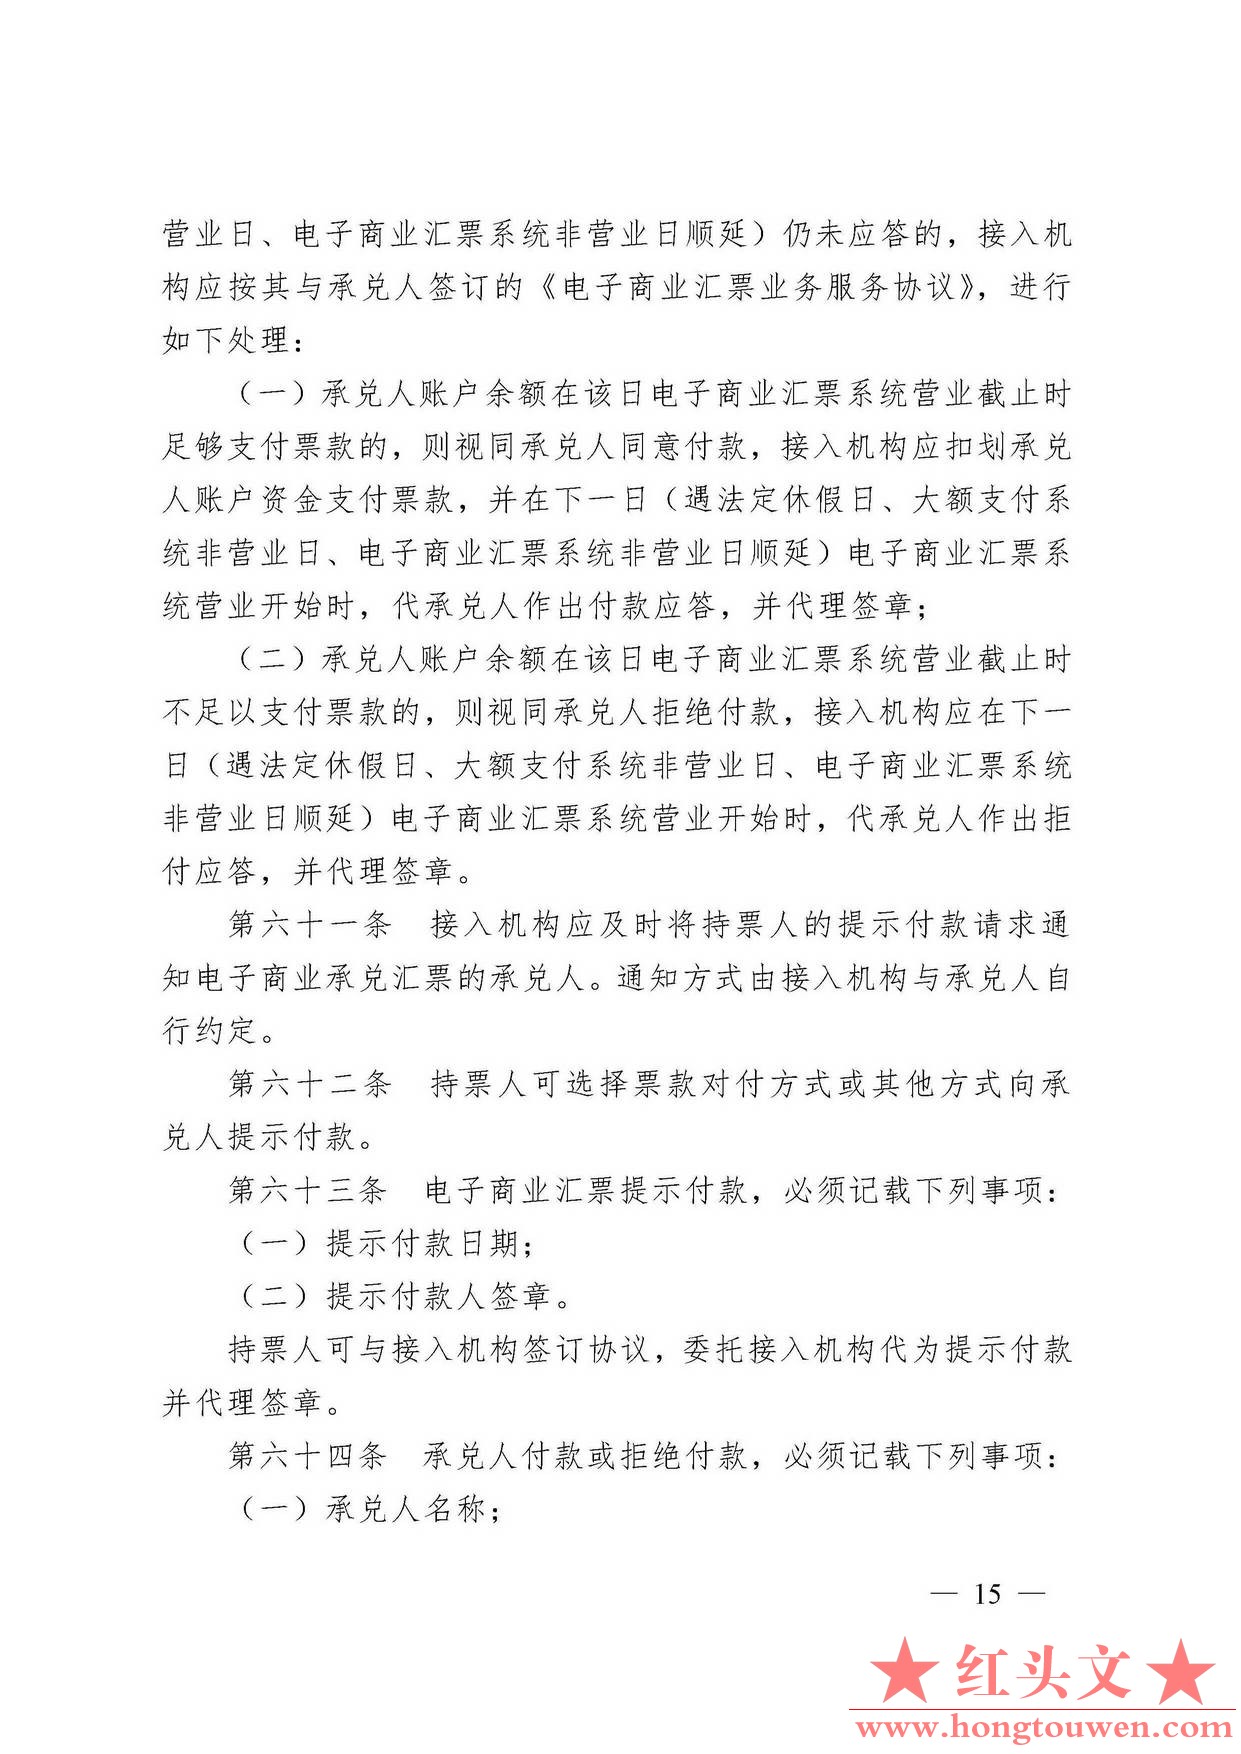 中国人民银行令[2009]2号-电子商业汇票管理办法_页面_15.jpg